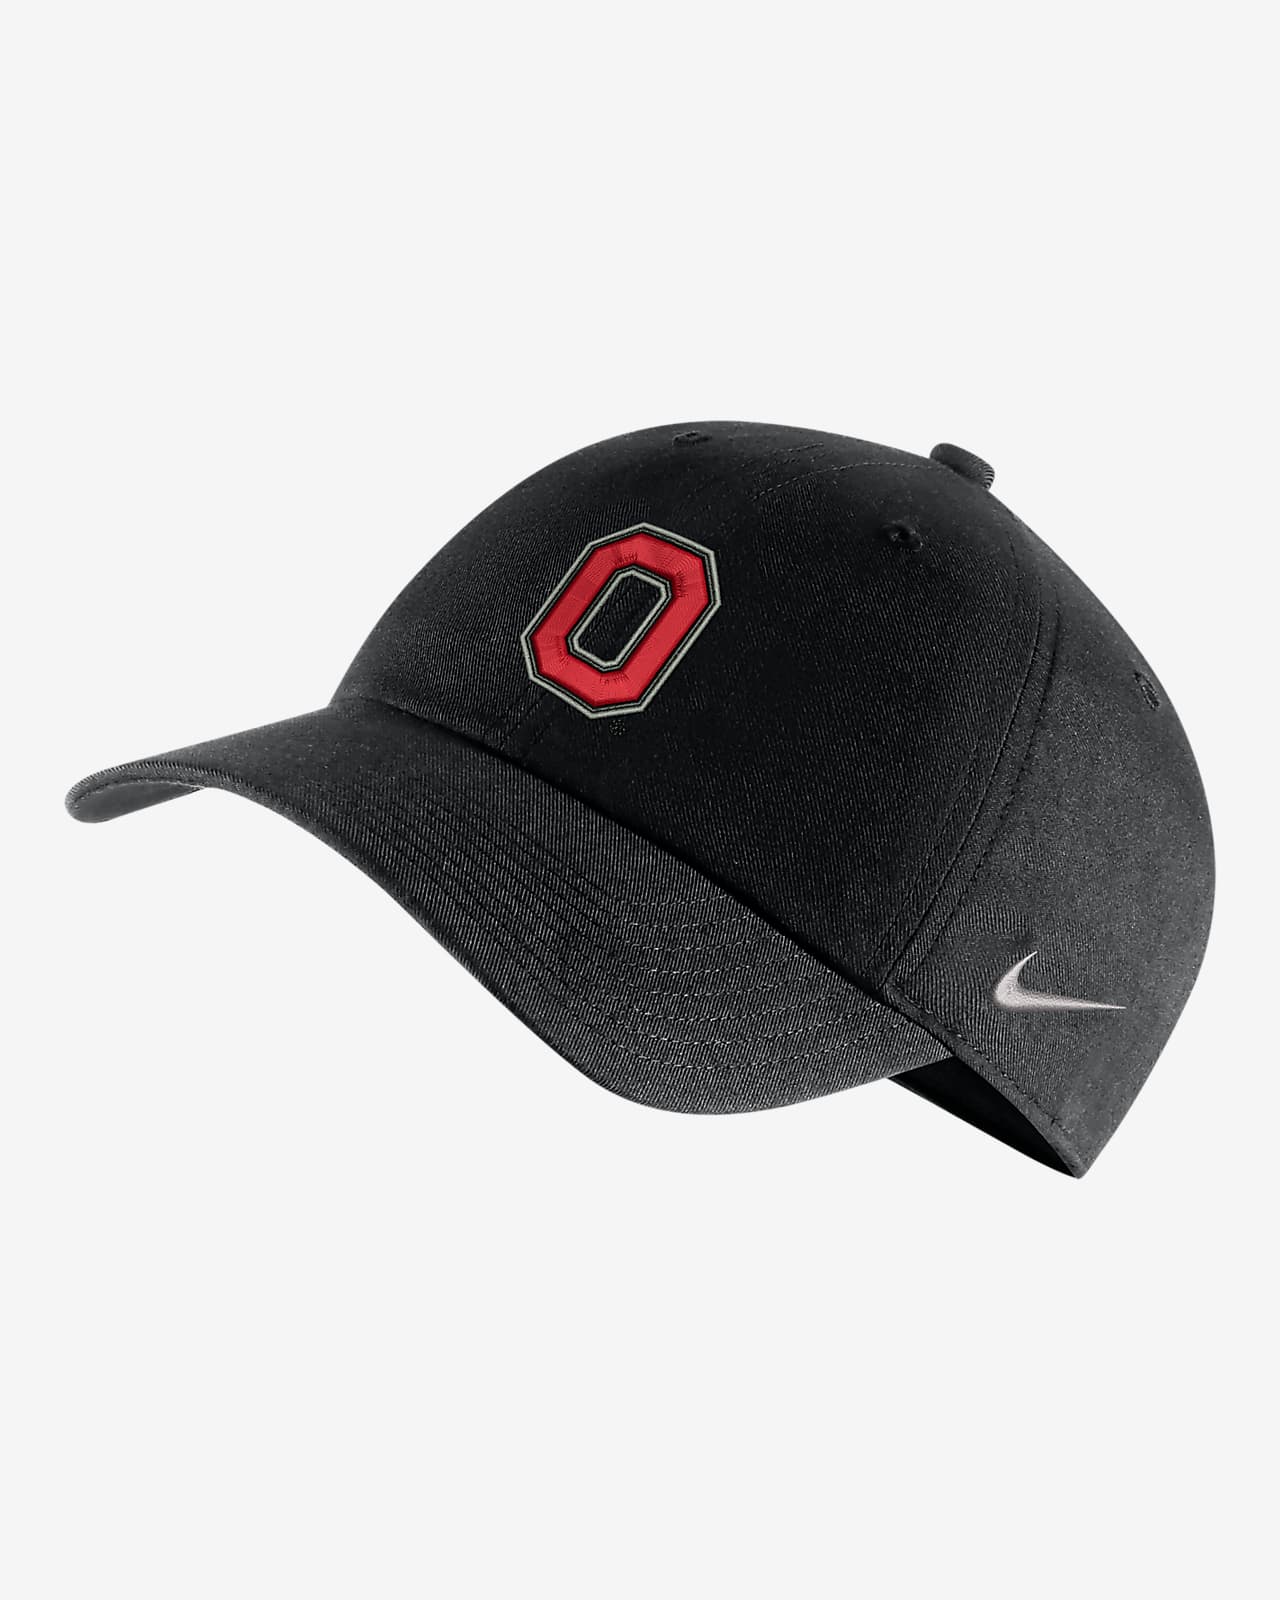 Gorra universitaria con logo Nike Ohio State